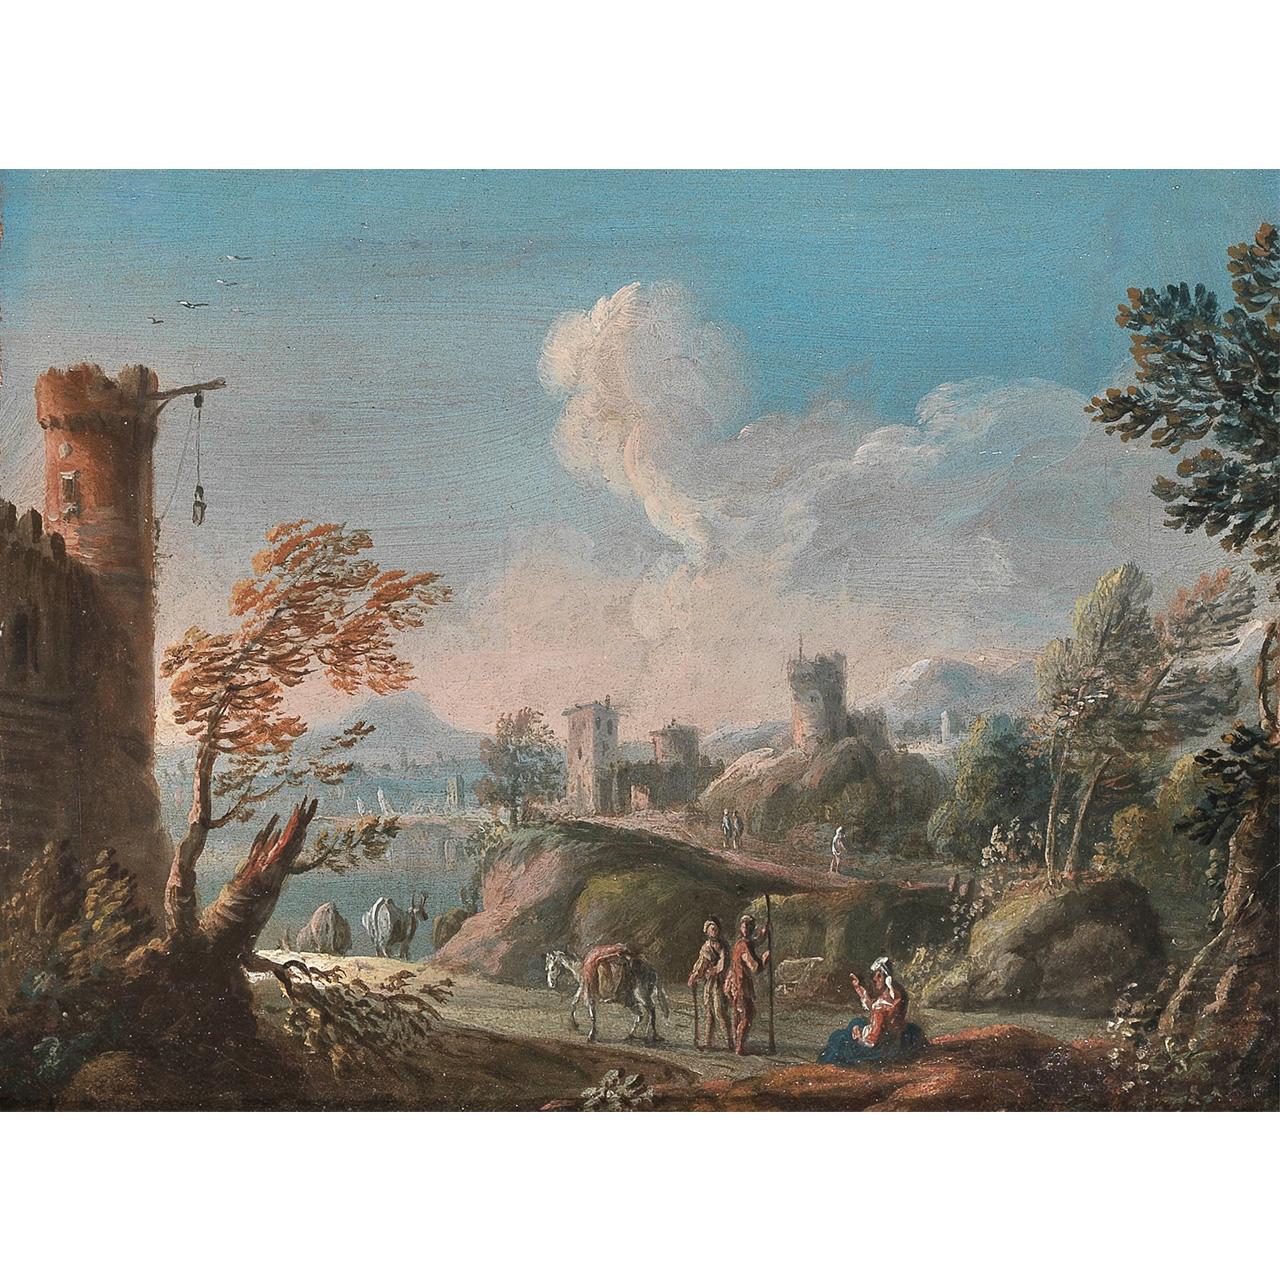 Dipinto: Veduta della campagna romana con figure ed edifici (I)